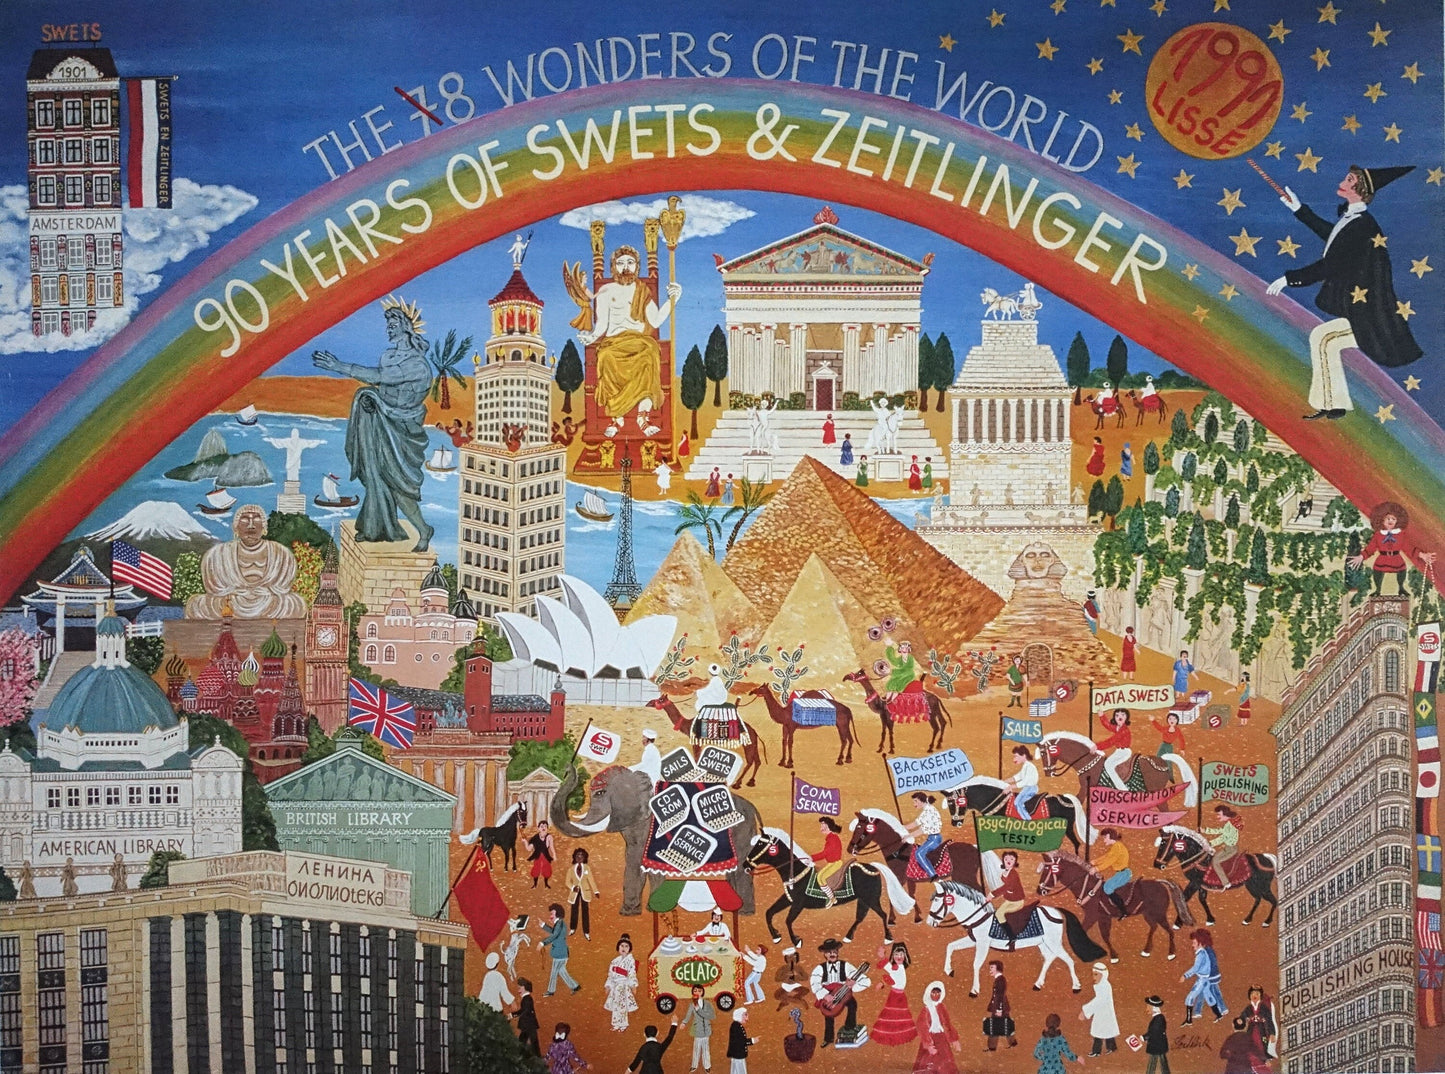 1991 Wonders of the World by Swets & Zeitlinger - Original Vintage Poster